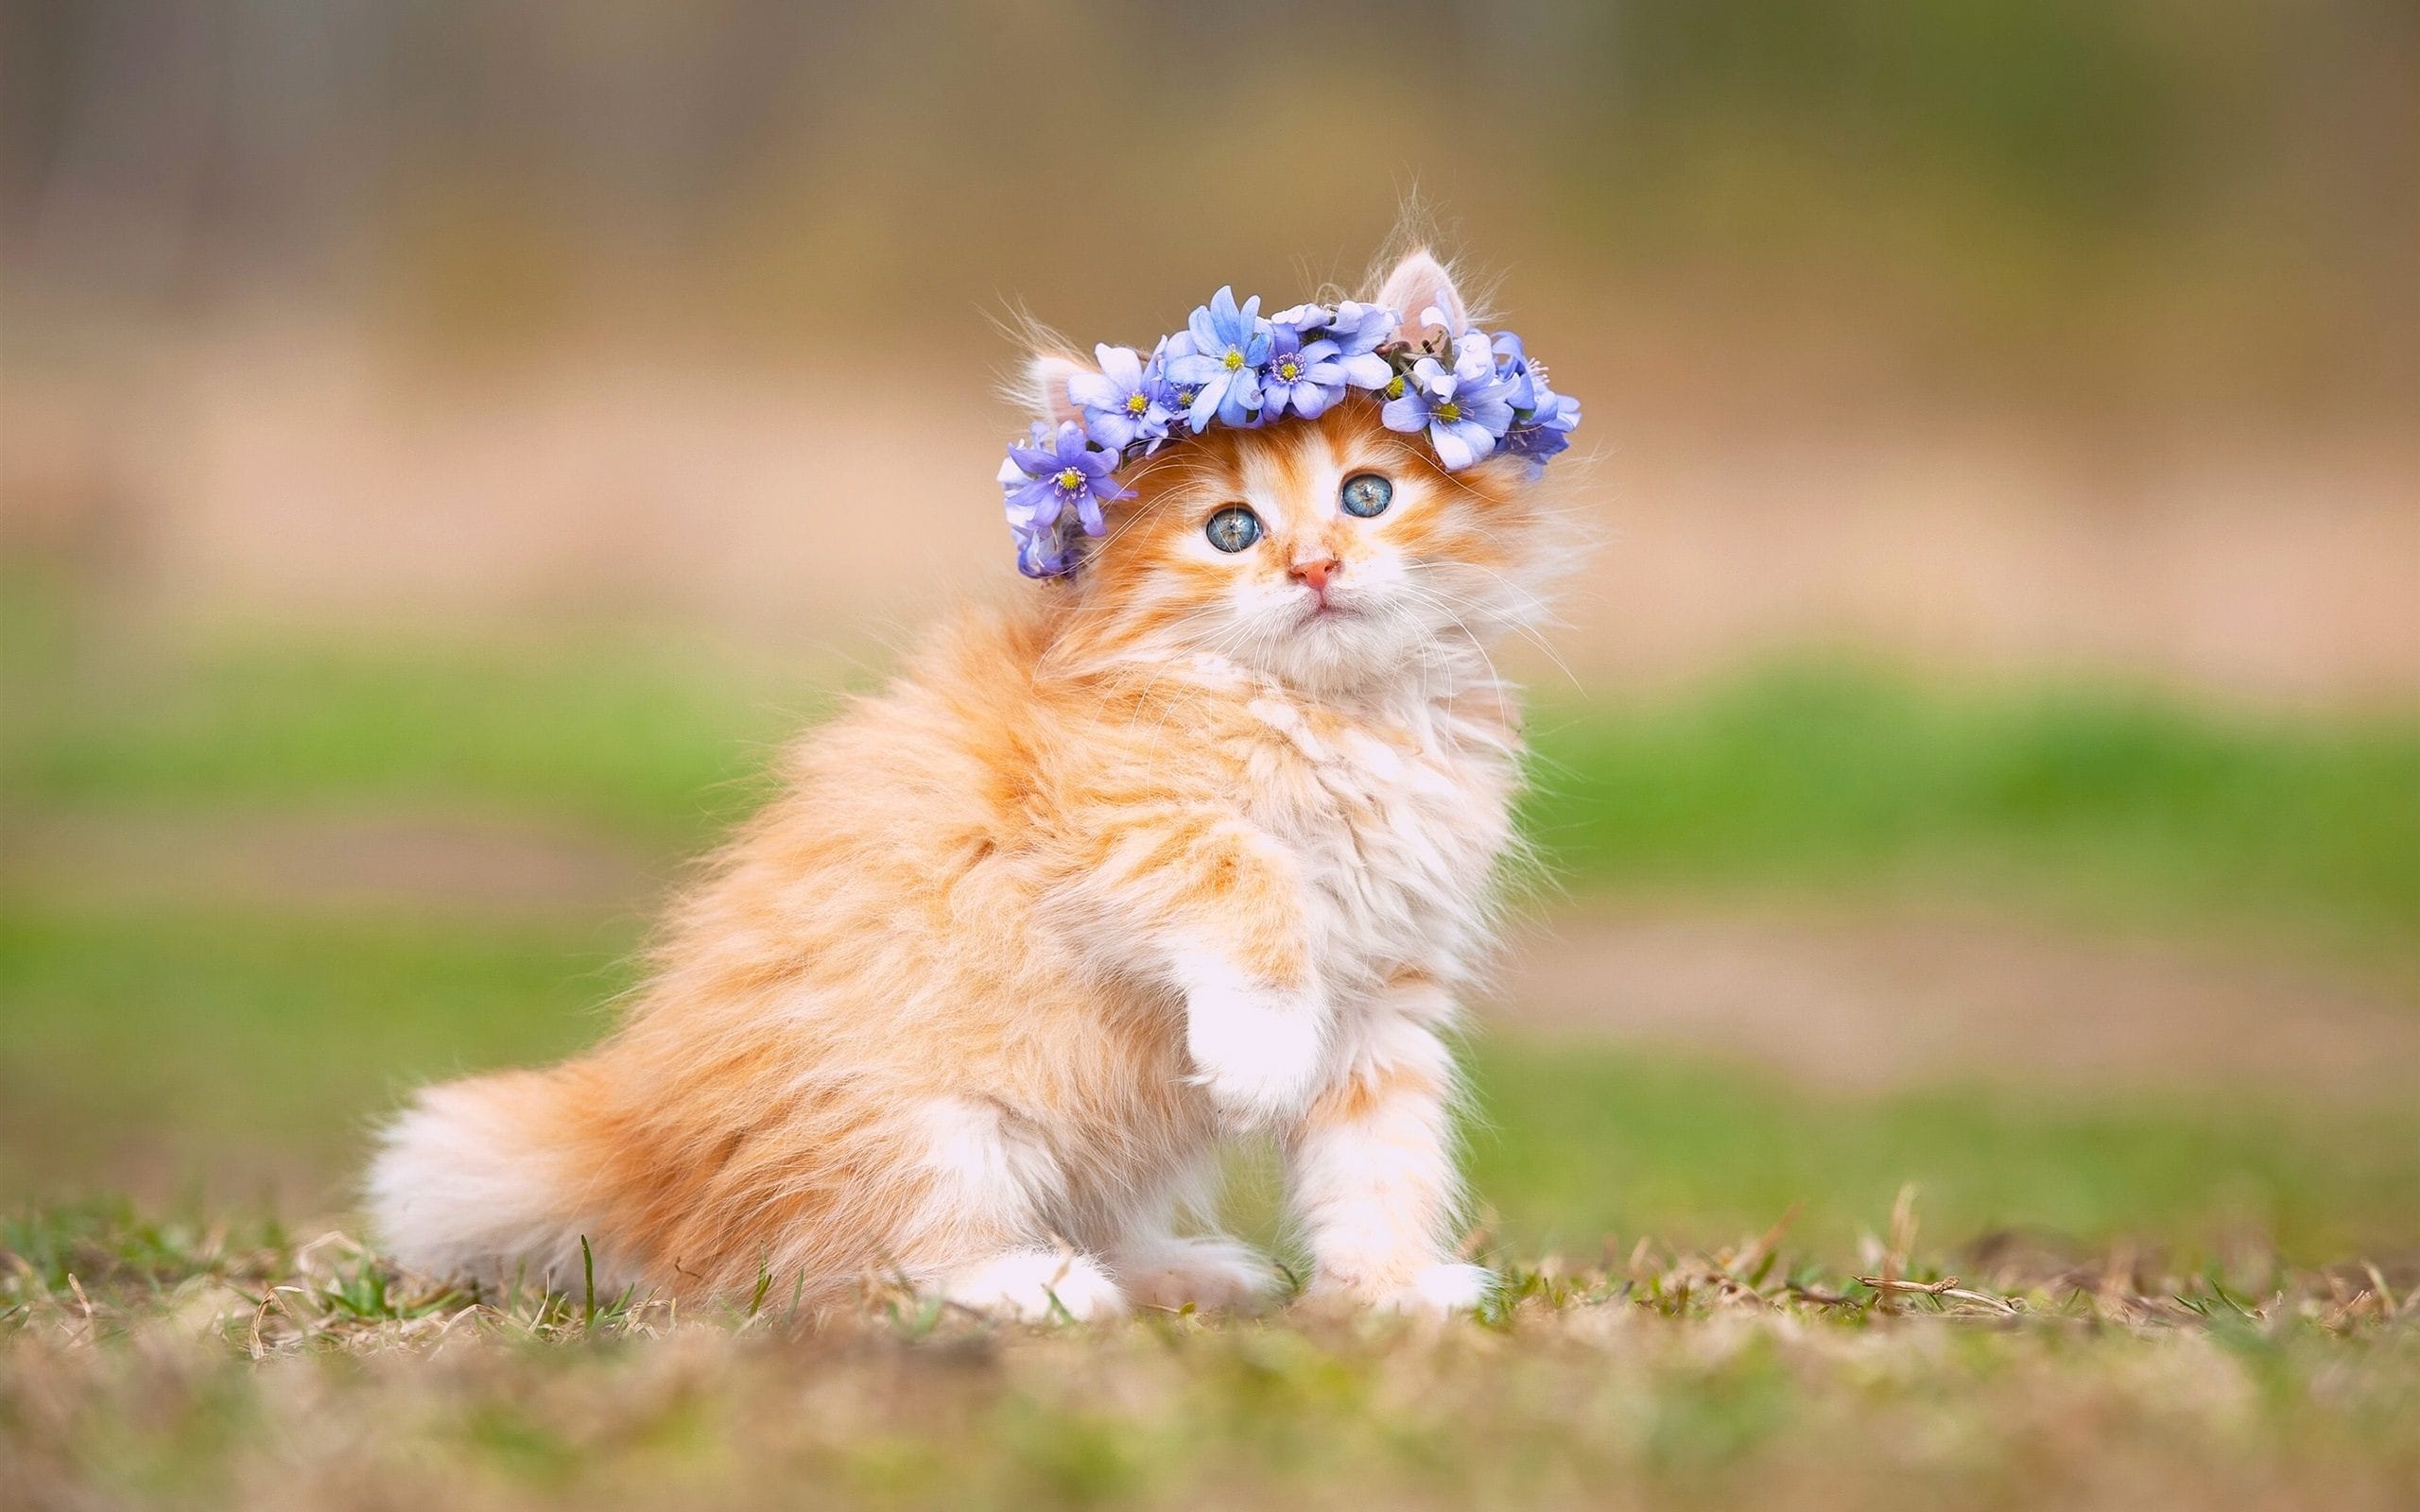 Hình ảnh chú mèo con cực đẹp khi được chủ nhân đeo chiếc vòng hoa trên đầu